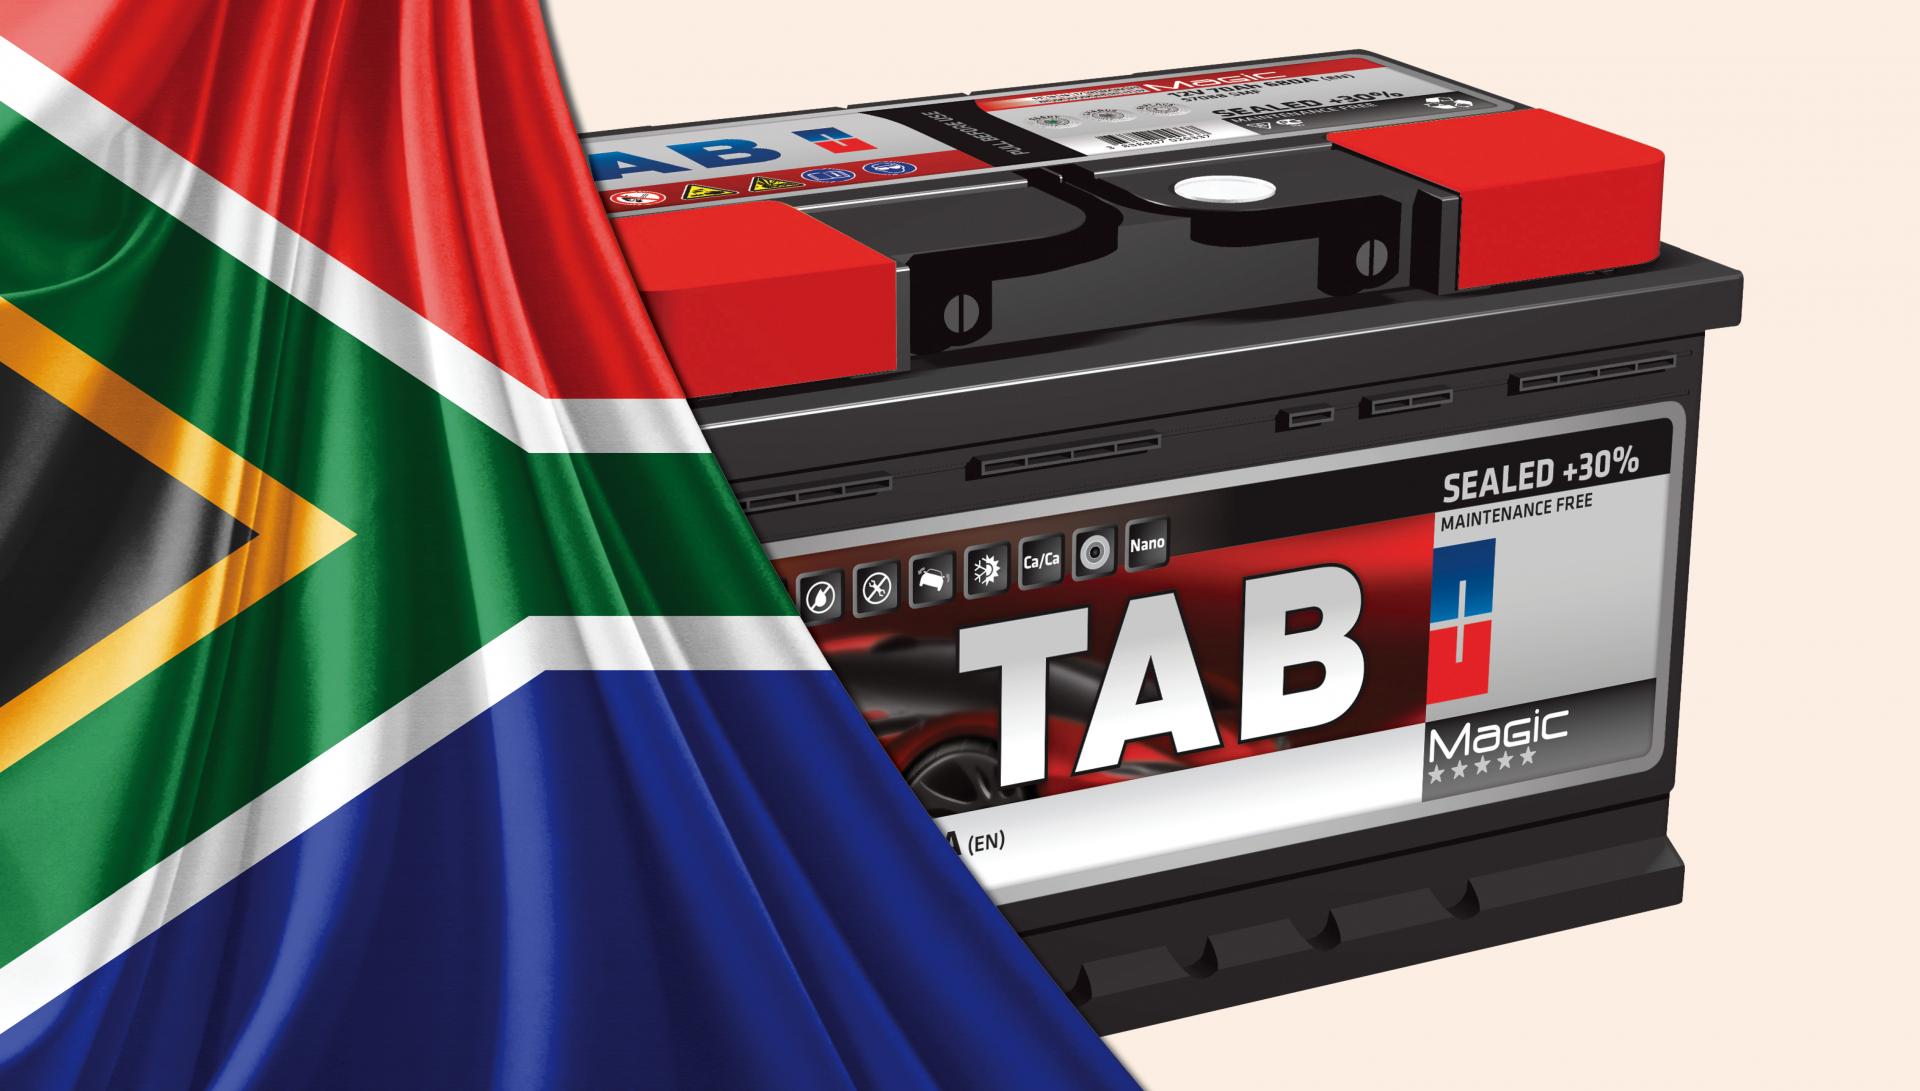 Mežiški TAB pred prodajo južnoafriški skupini Metair